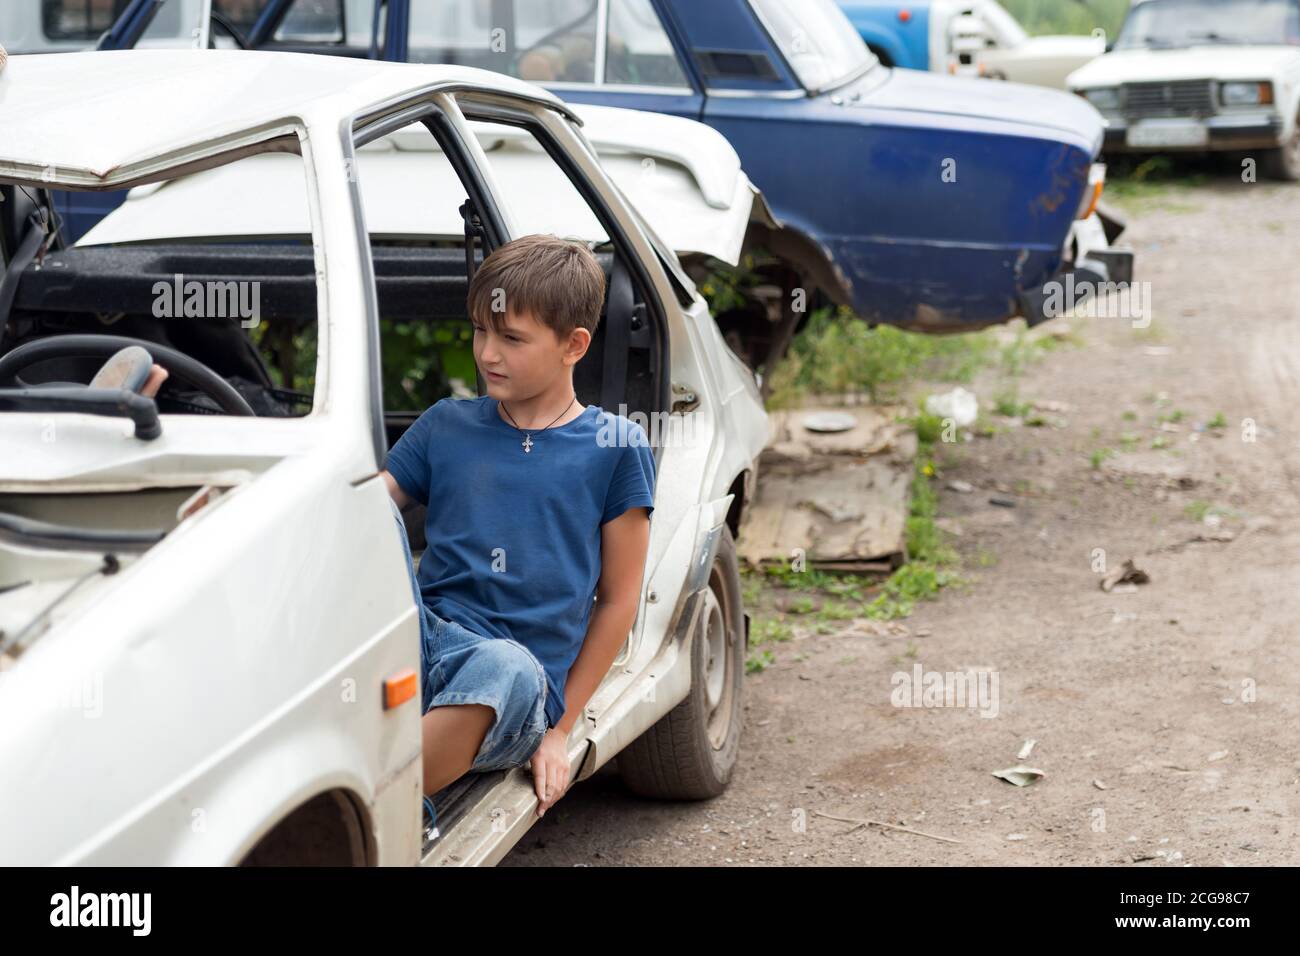 Un garçon de 11 ans est assis dans une voiture démontée dans un dépotoir de vieilles voitures abandonnées par une belle journée d'été. Banque D'Images